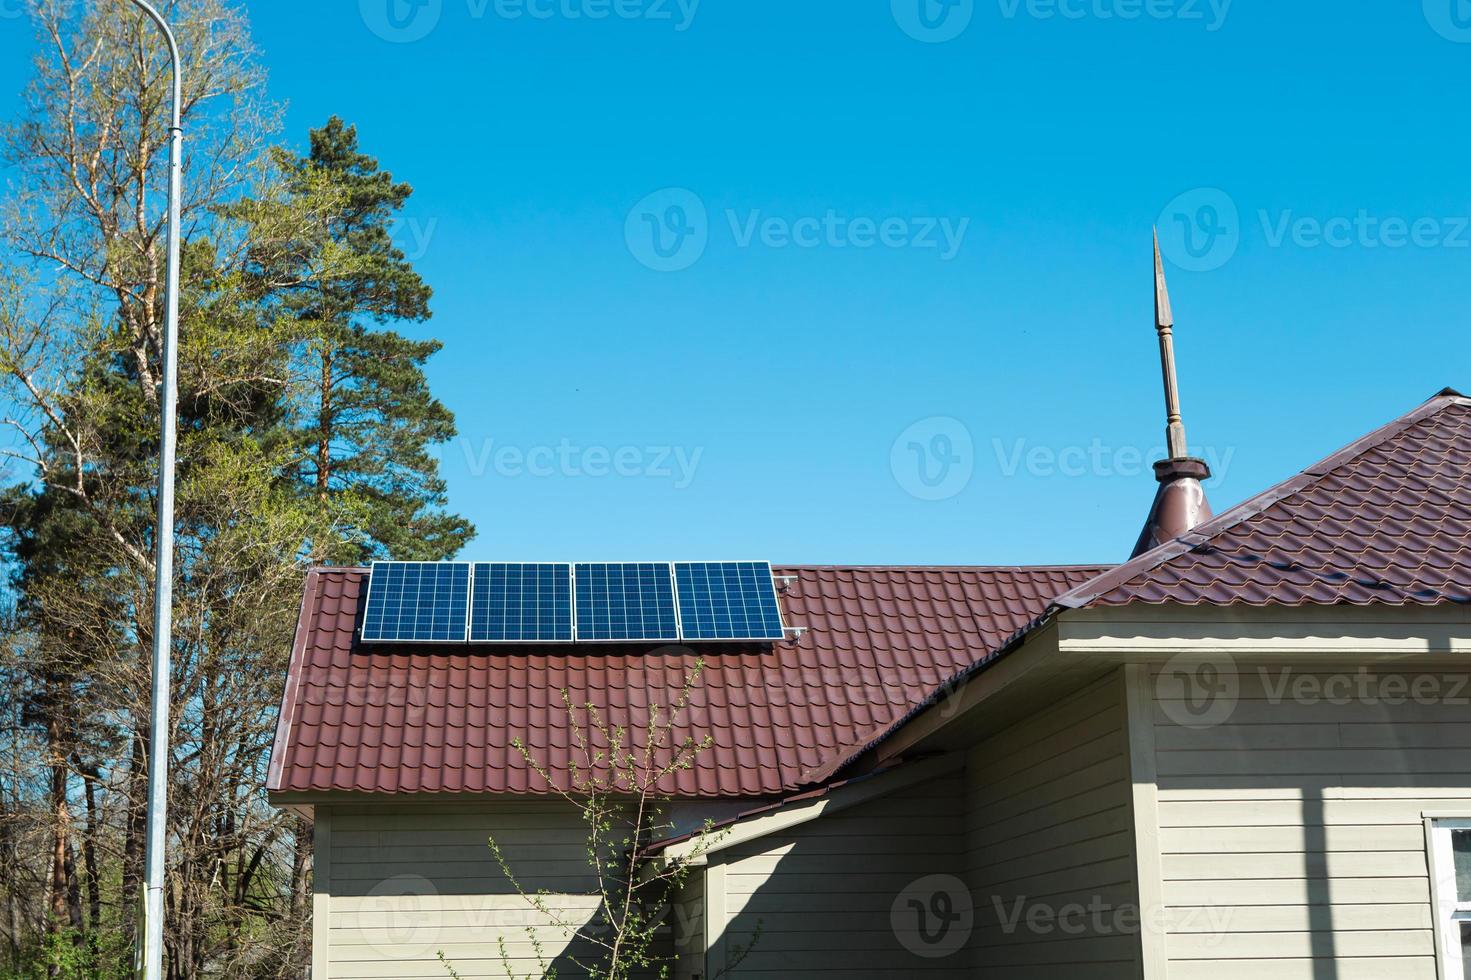 panneaux solaires sur le toit d'une maison privée d'un étage à la campagne. utilisation respectueuse de l'environnement de l'énergie solaire, une source alternative. prendre soin de la nature, préserver les ressources photo